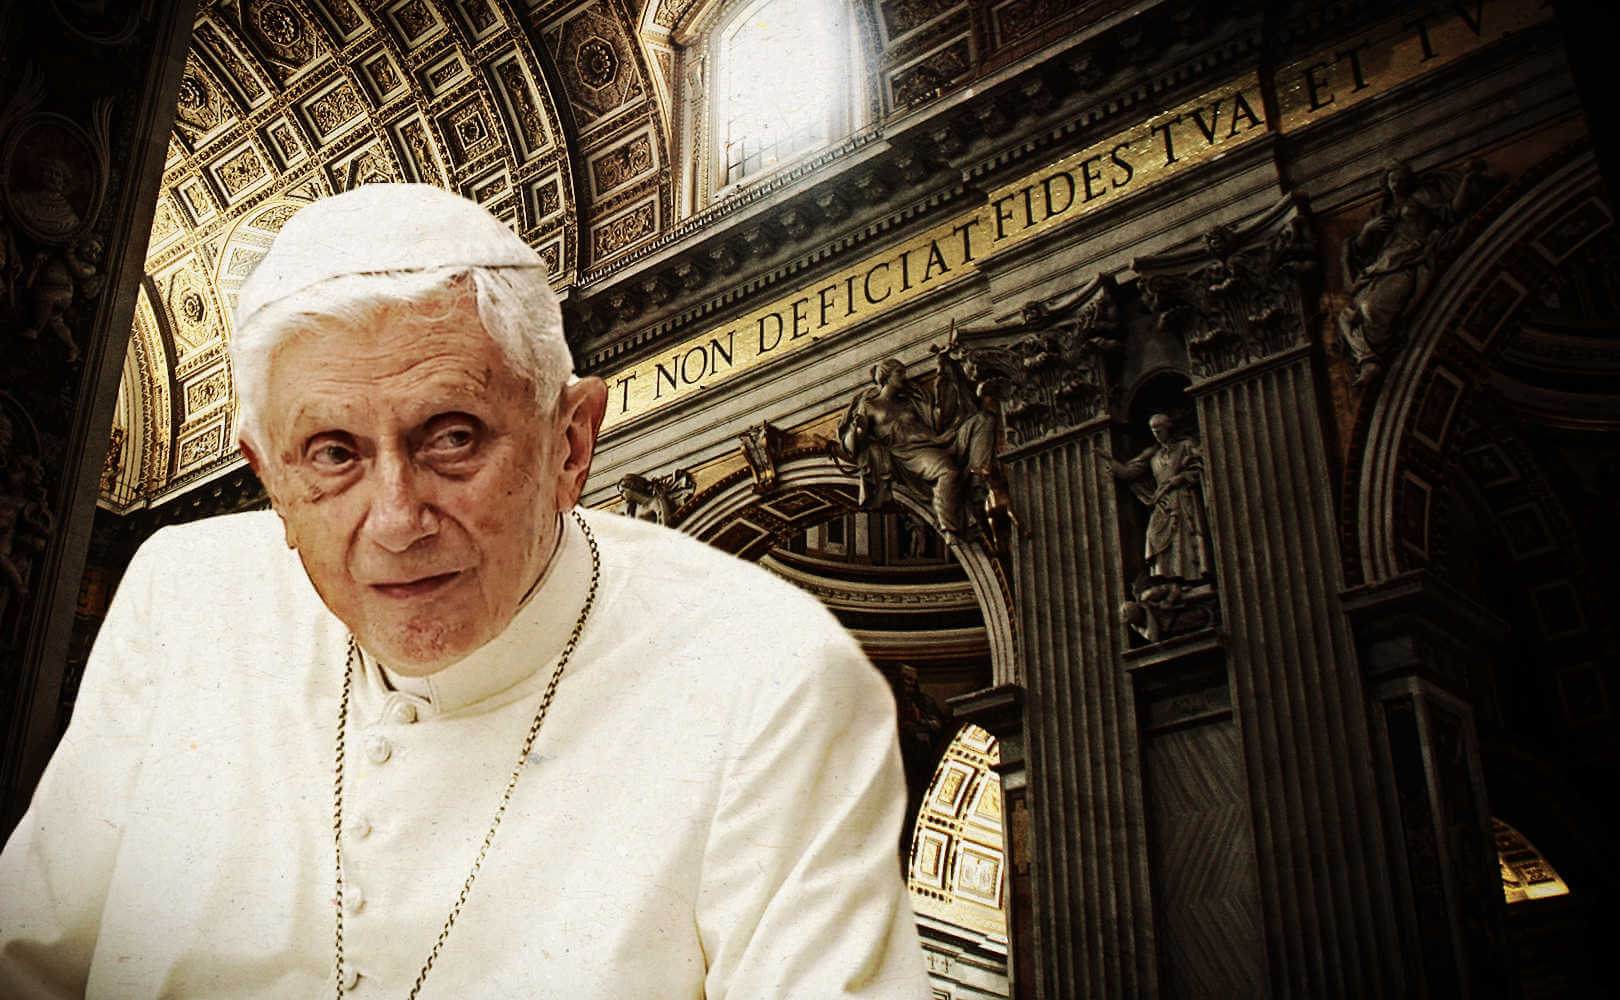 Trad Perspective on Benedict XVI